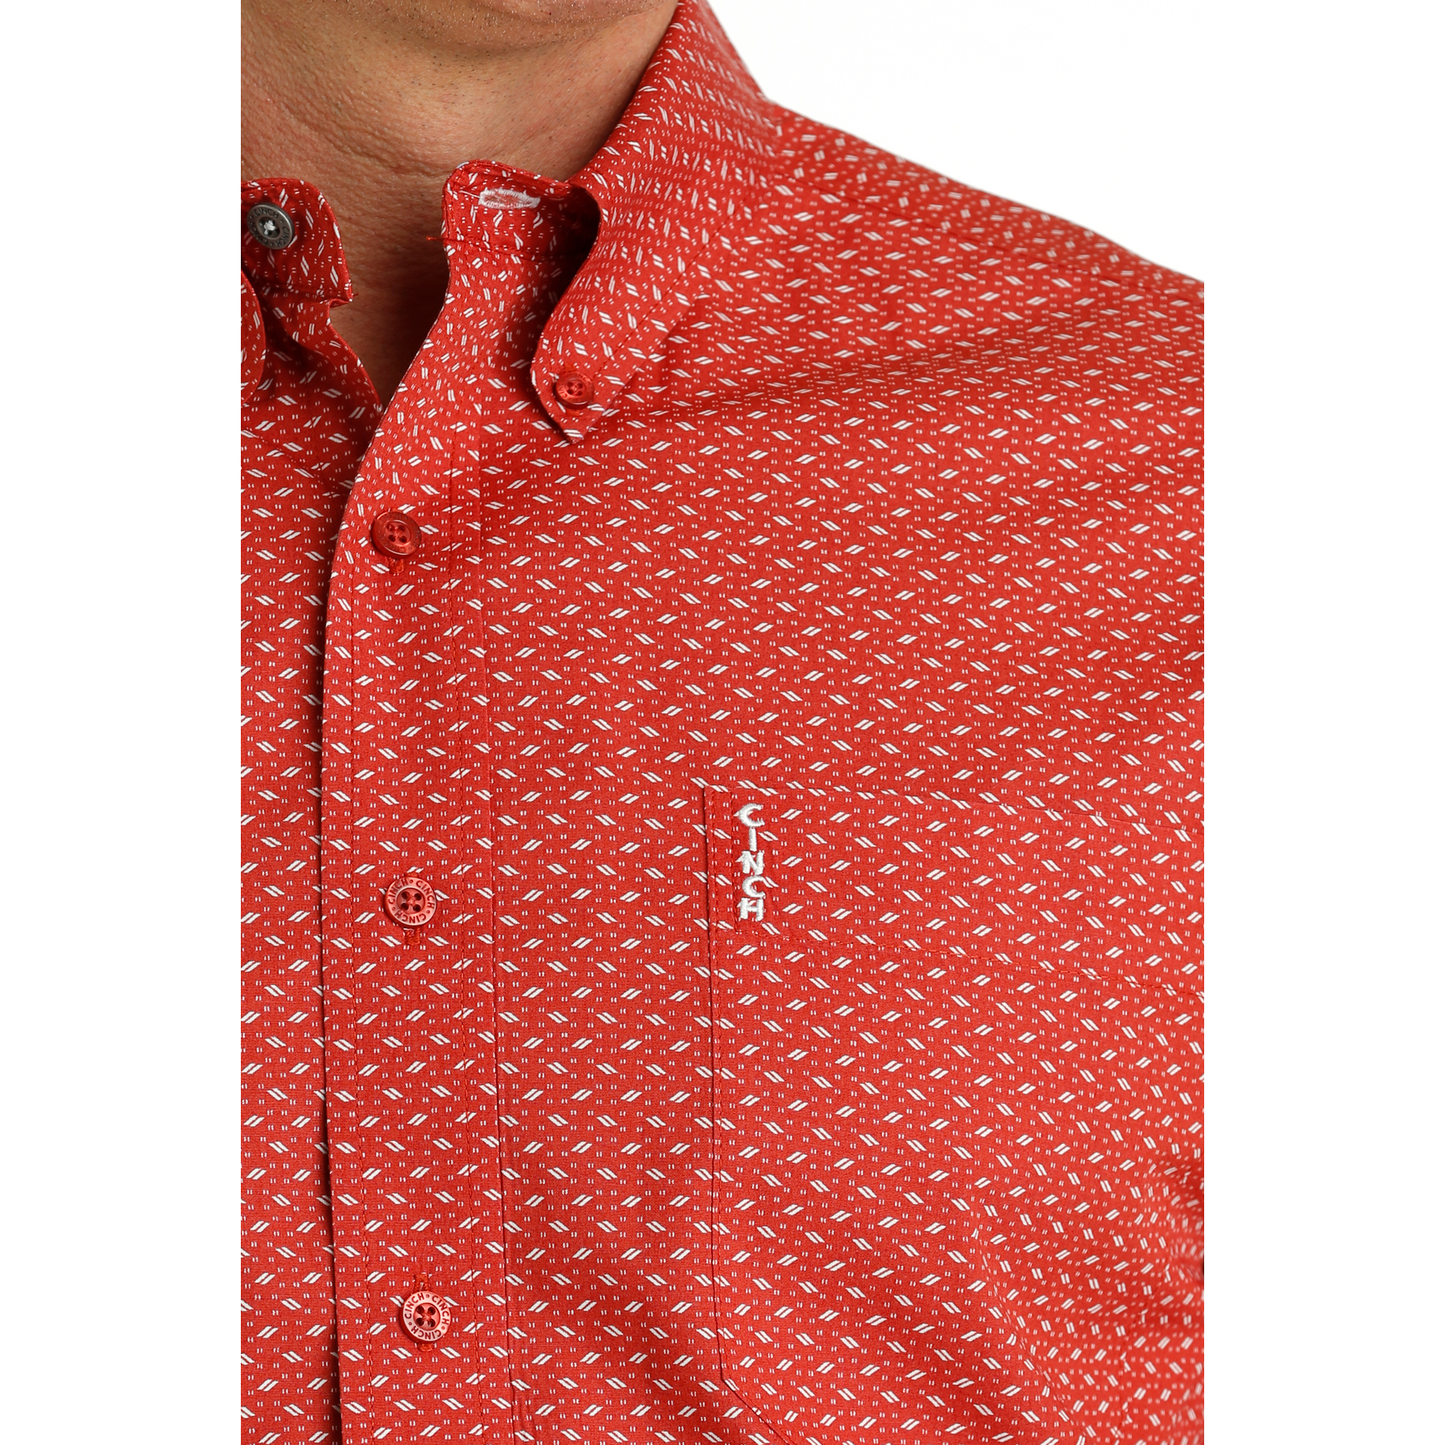 Cinch Men's Red Modern Print Button Down Shirt MTW1347086